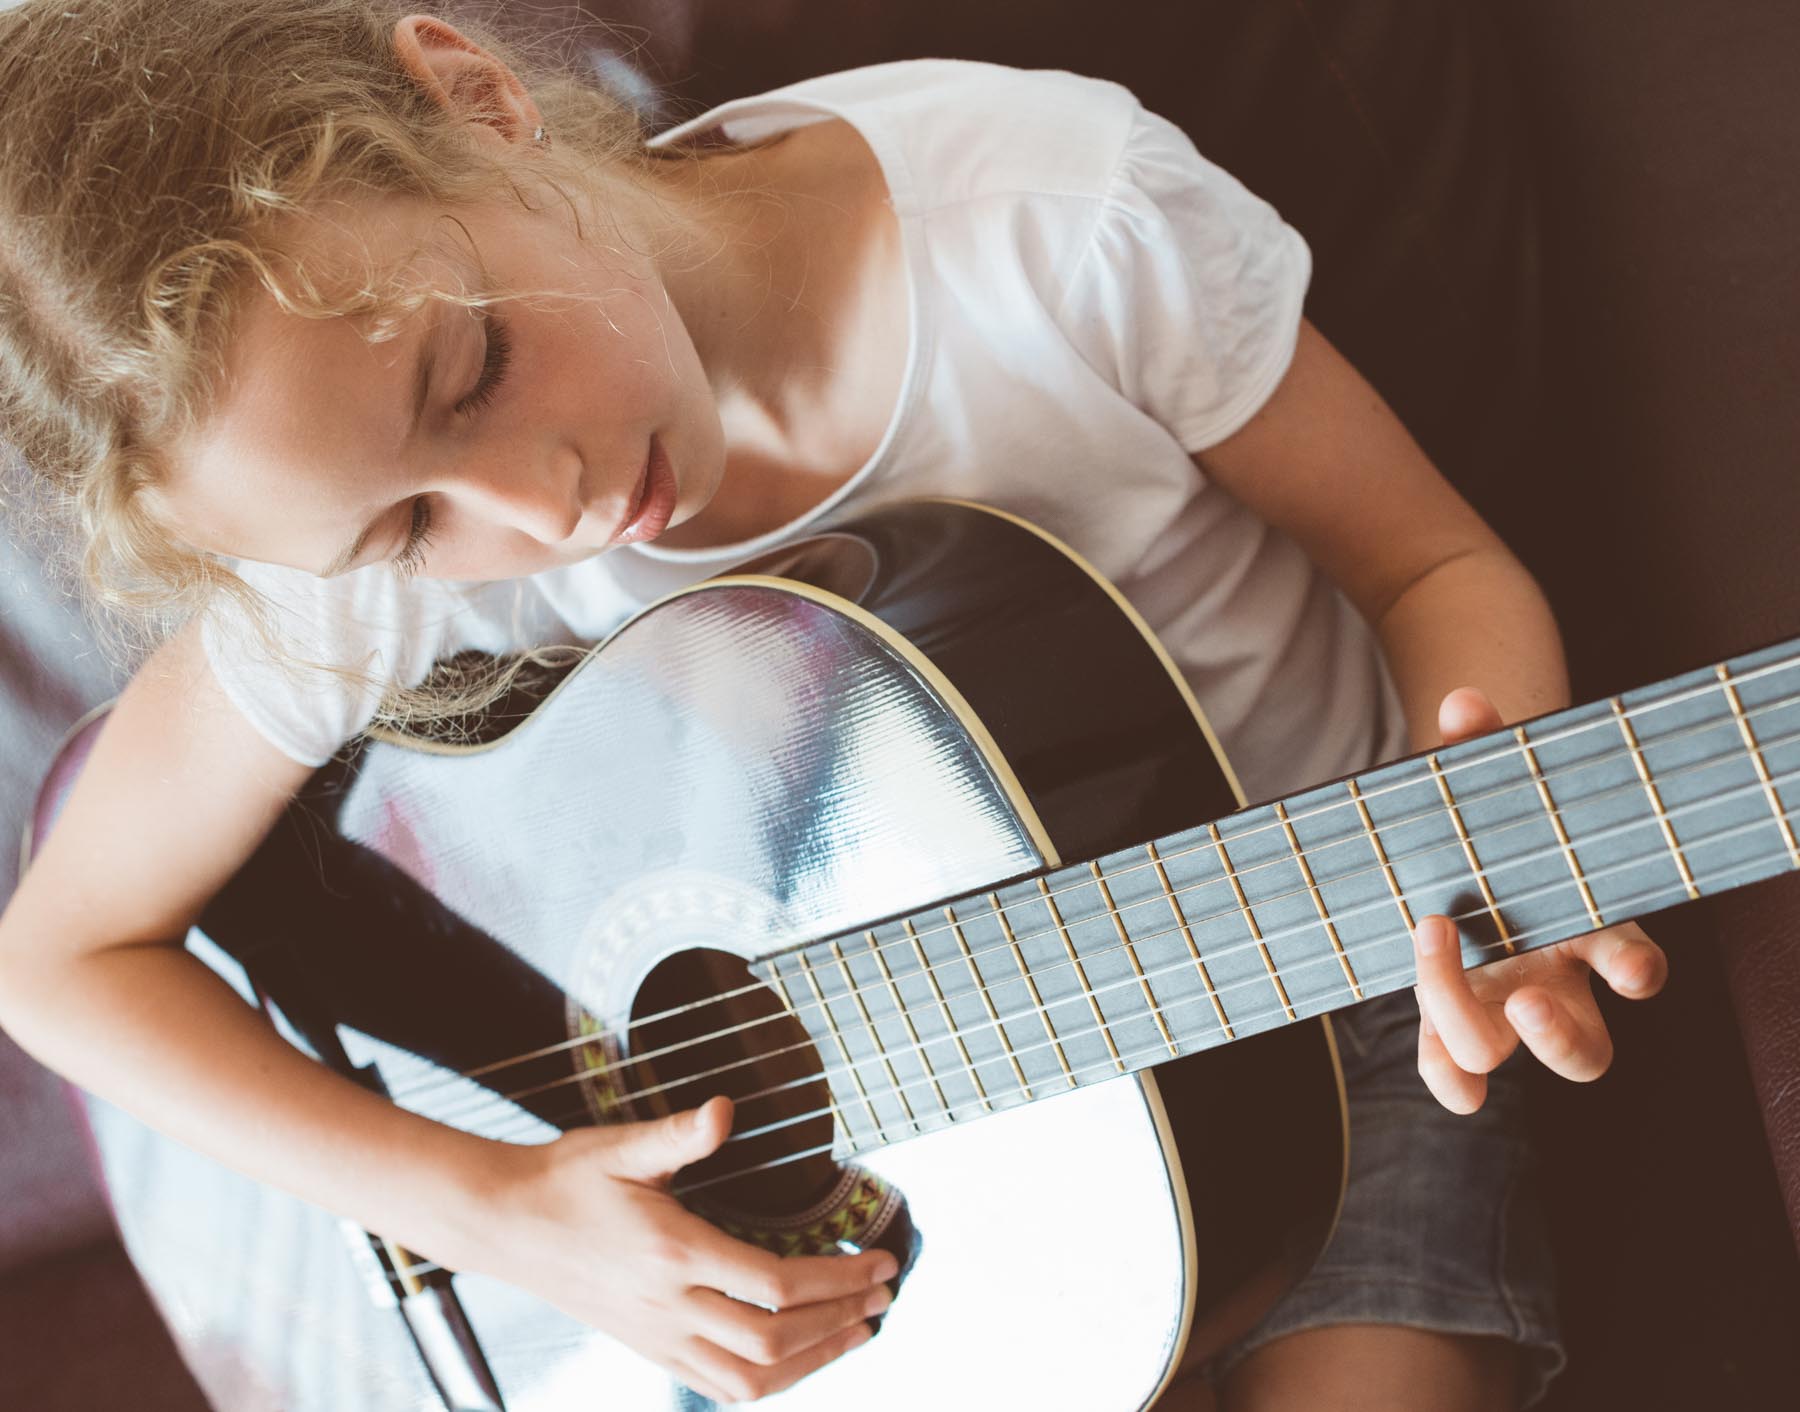 třináctiletá dívka hraje na klasické kytaře